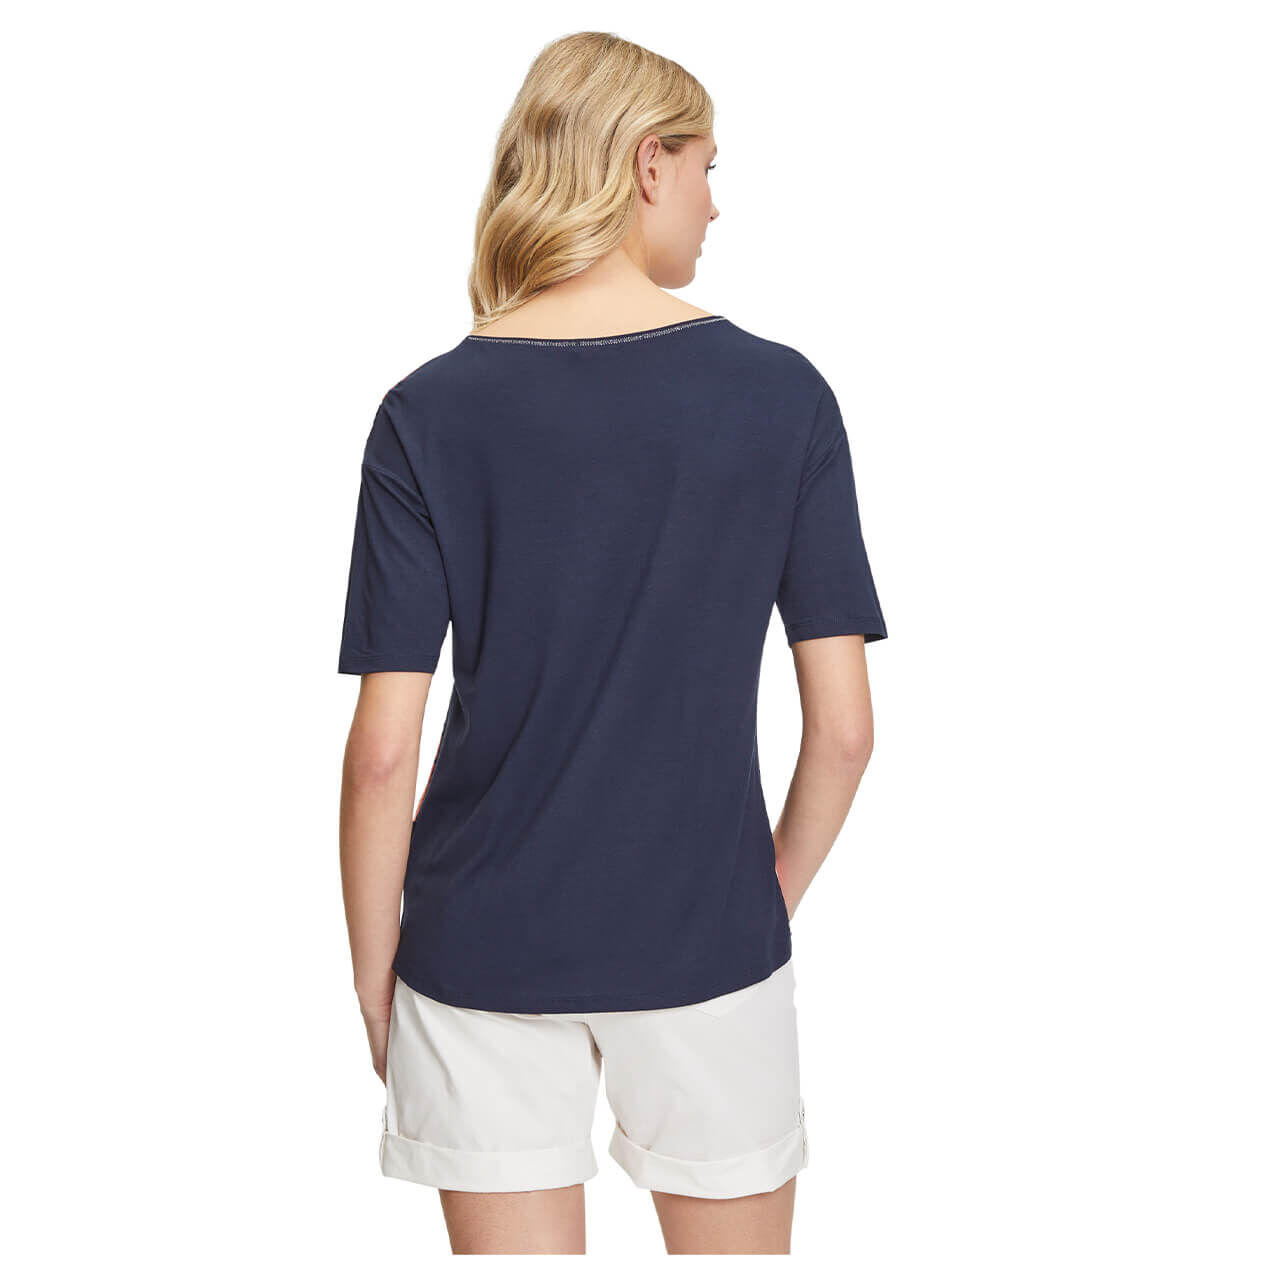 Betty Barclay T-Shirt für Damen in Dunkelblau mit Print, FarbNr.: 8878